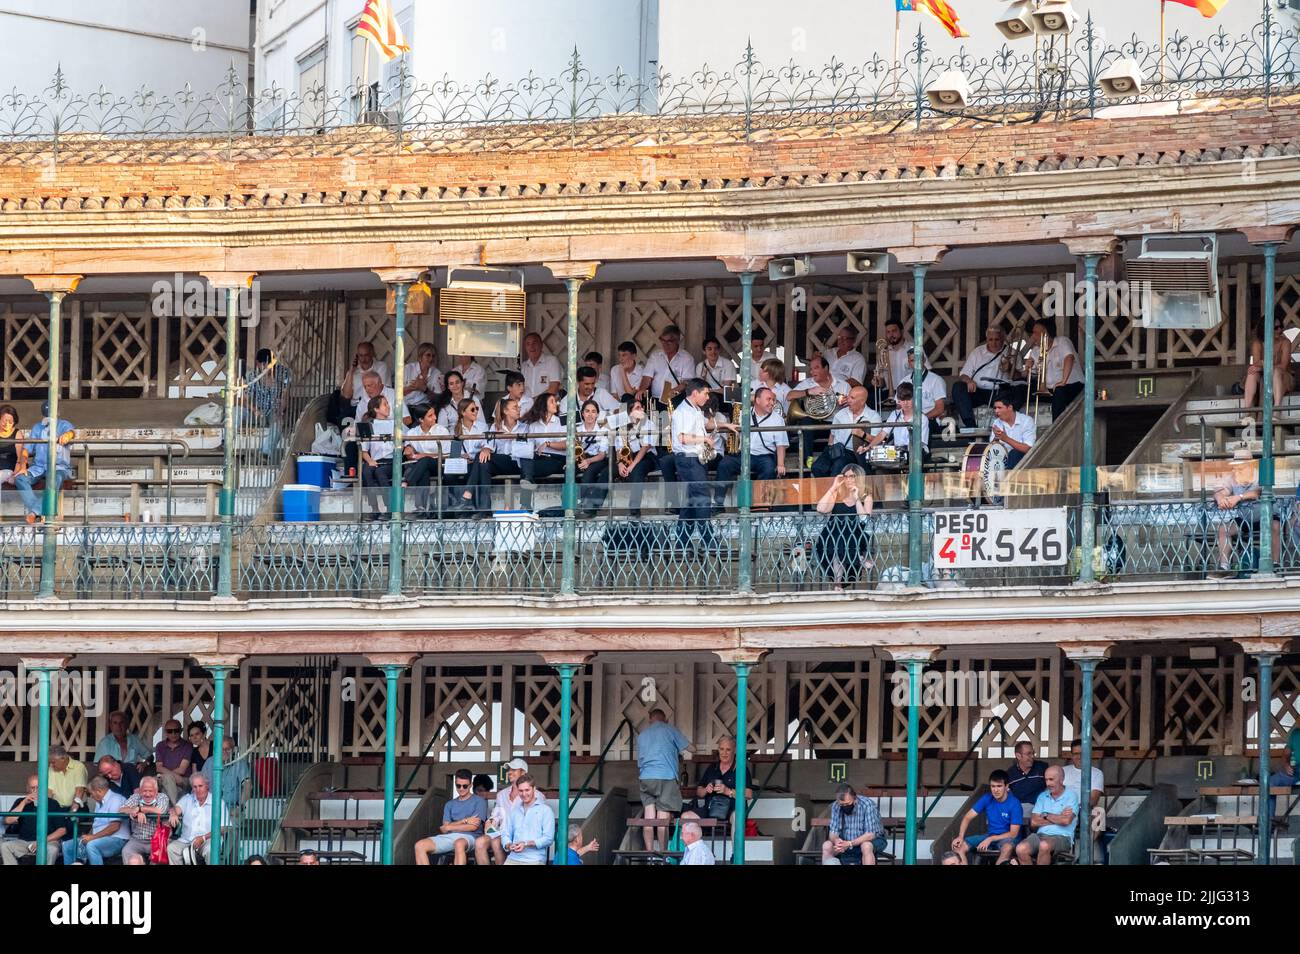 Valence, Espagne - 16 juillet 2022 : corrida pendant le festival d'été sur la place du taureau dans la ville Banque D'Images